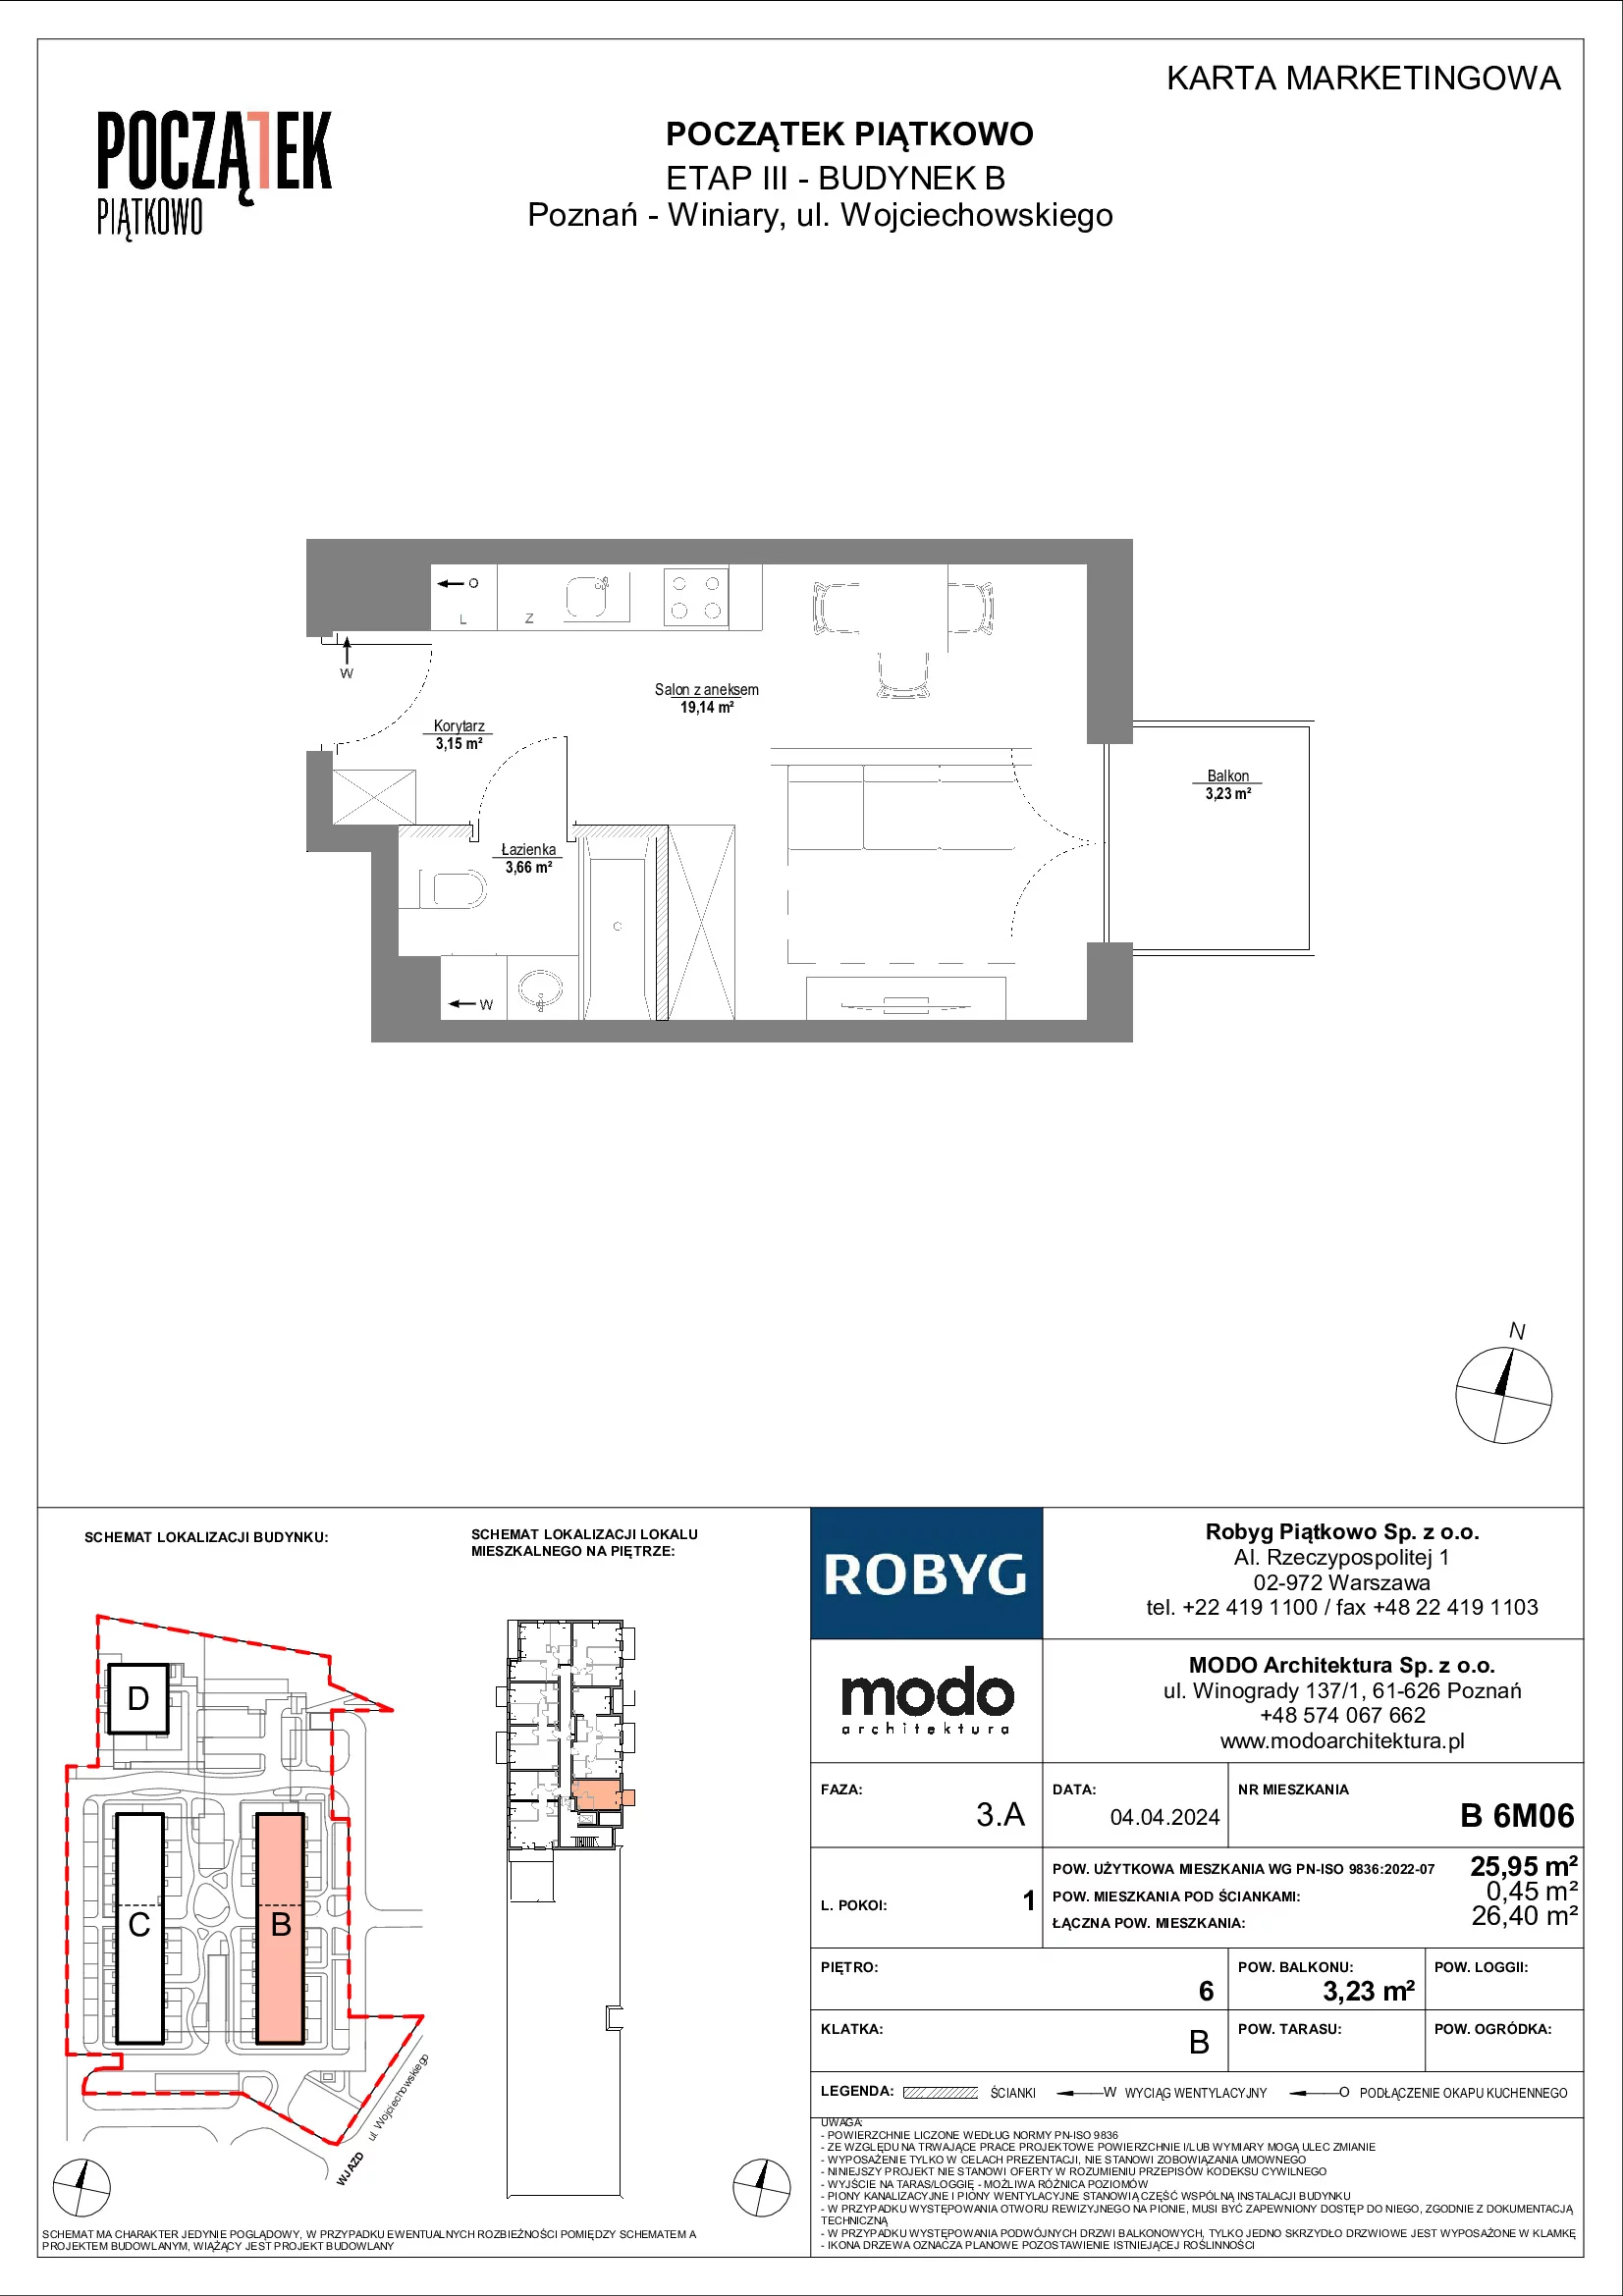 Mieszkanie 25,95 m², piętro 6, oferta nr B.6M06, Początek Piątkowo, Poznań, Piątkowo, ul. Wojciechowskiego